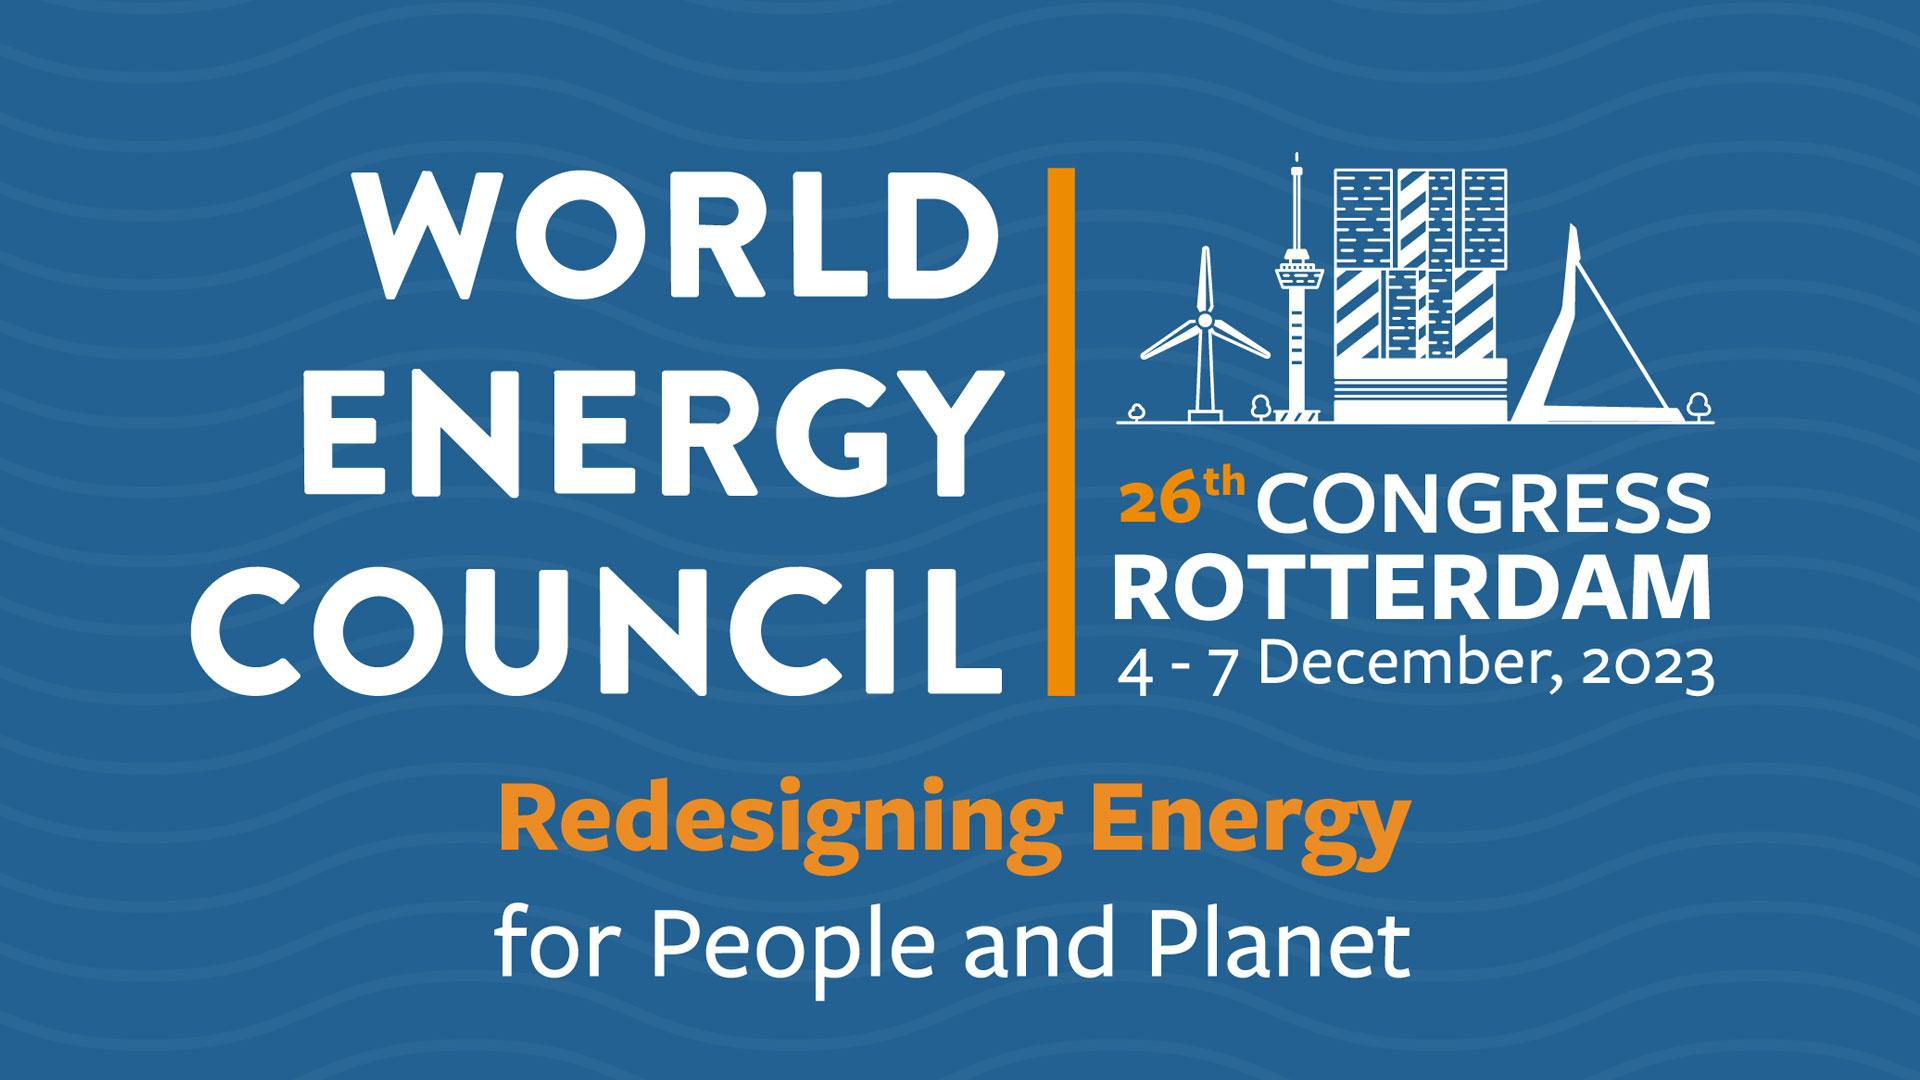 World Energy Council Congress Rotterdam